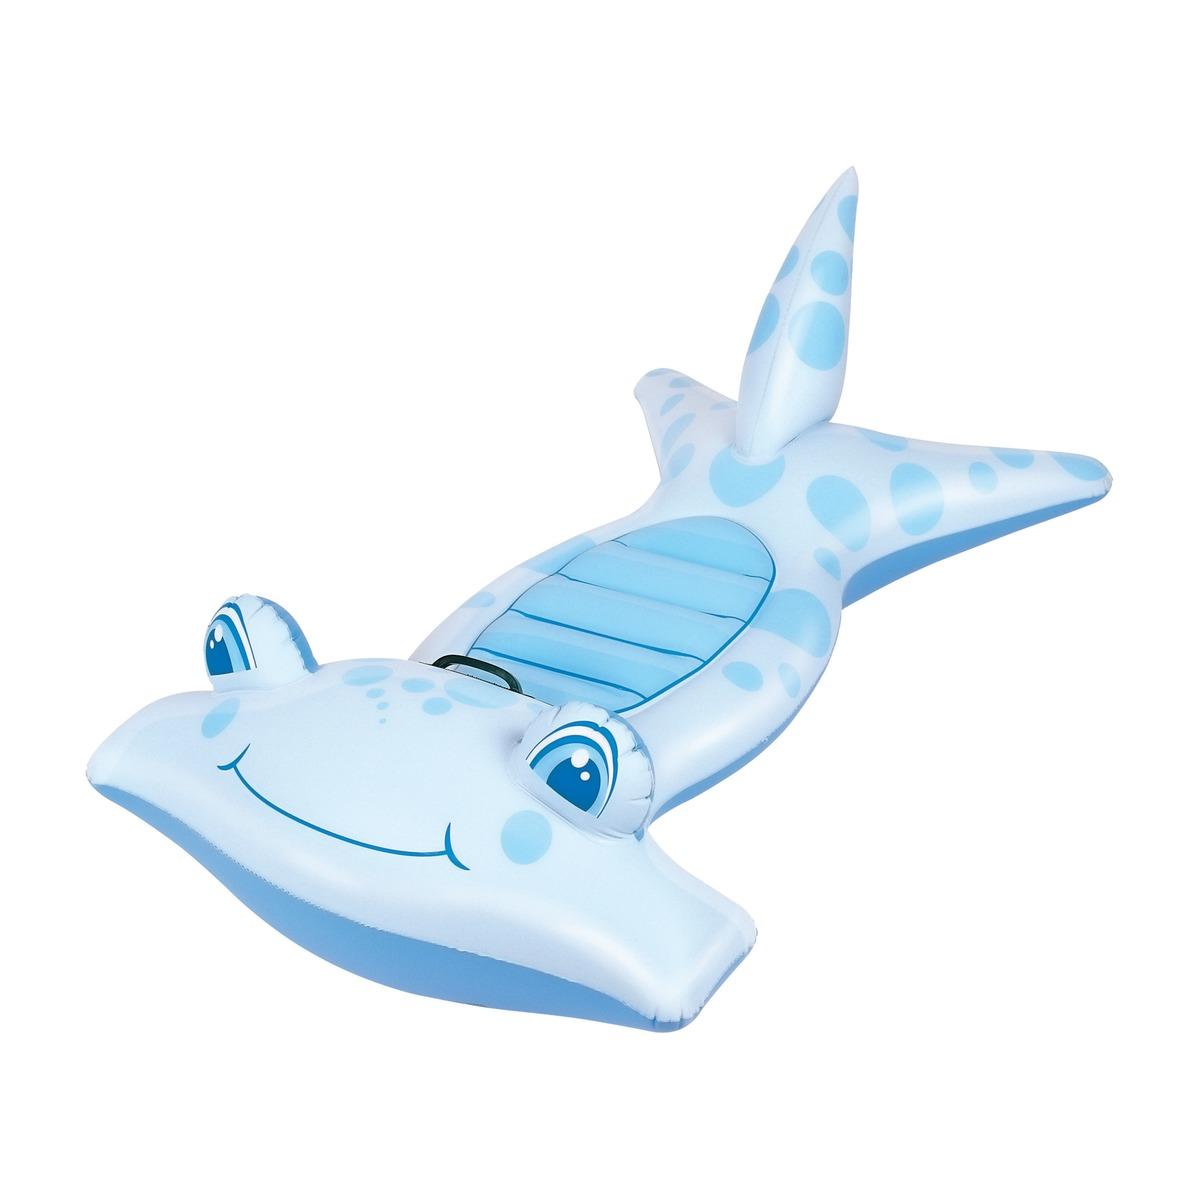 Requin marteau gonflable à poignée - 114 x 61 cm - Bleu